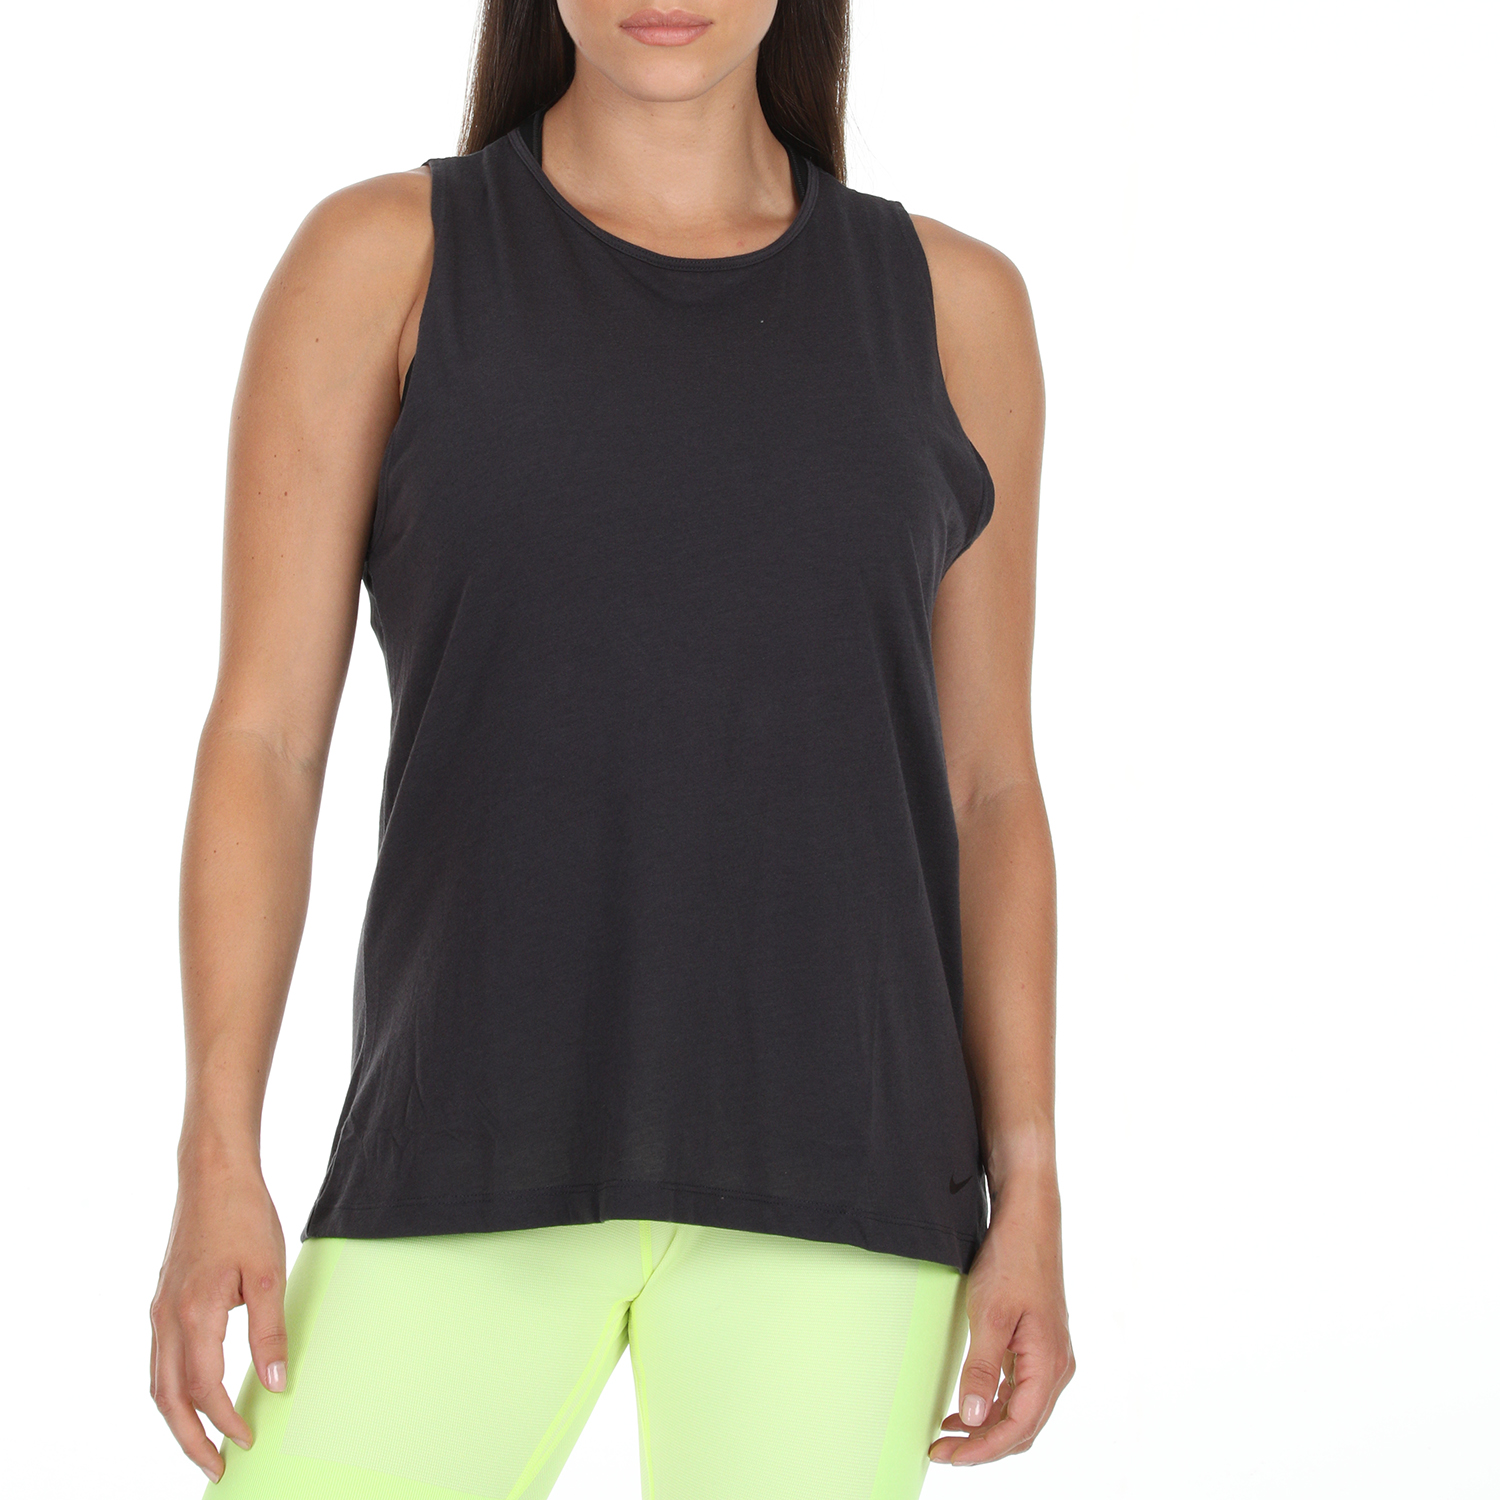 Γυναικεία/Ρούχα/Αθλητικά/T-shirt-Τοπ NIKE - Γυναικεία αμάνικη μπλούζα Nike Dri-FIT Women's Open-Back ανθρακί